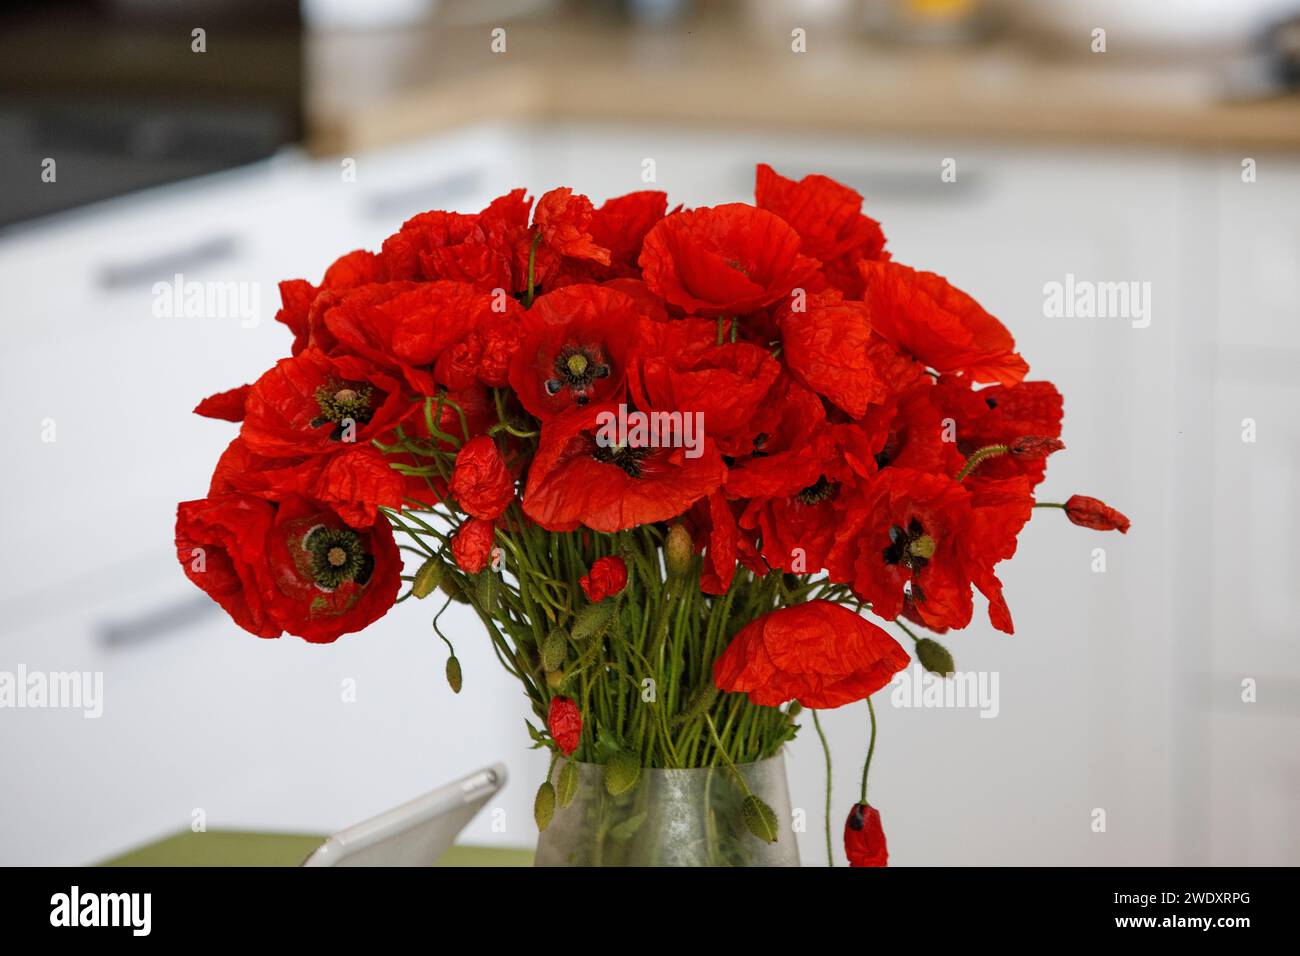 fleurs de coquelicots rouges dans un vase sur la table. Photo de haute qualité Banque D'Images